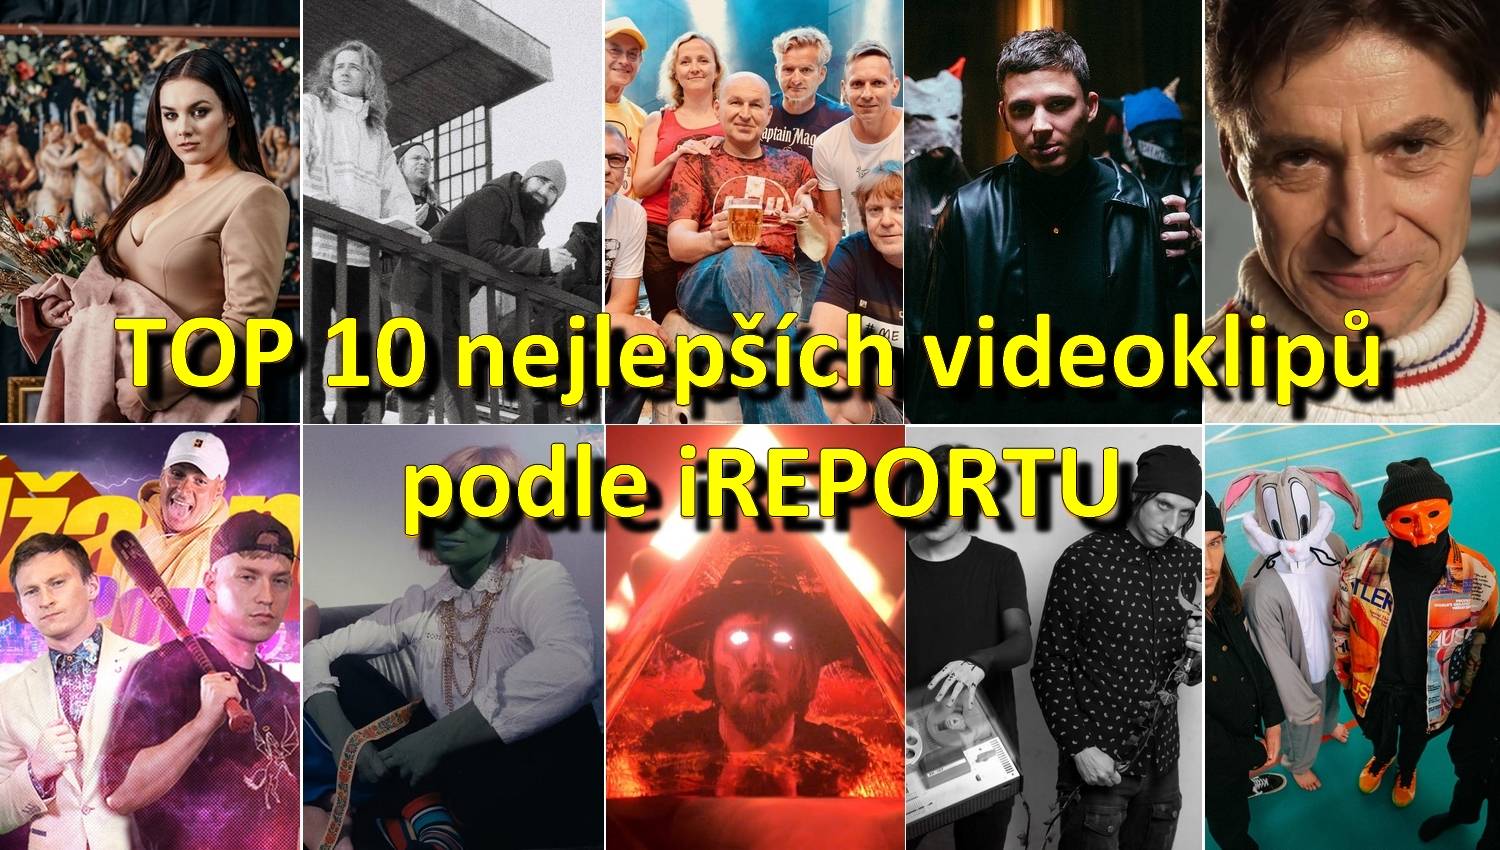 TOP 10 českých videoklipů roku 2021 podle redakce iREPORT natočili Tři sestry, Ewa Farna, Bert & Friends, Midi Lidi, Sebastian a další